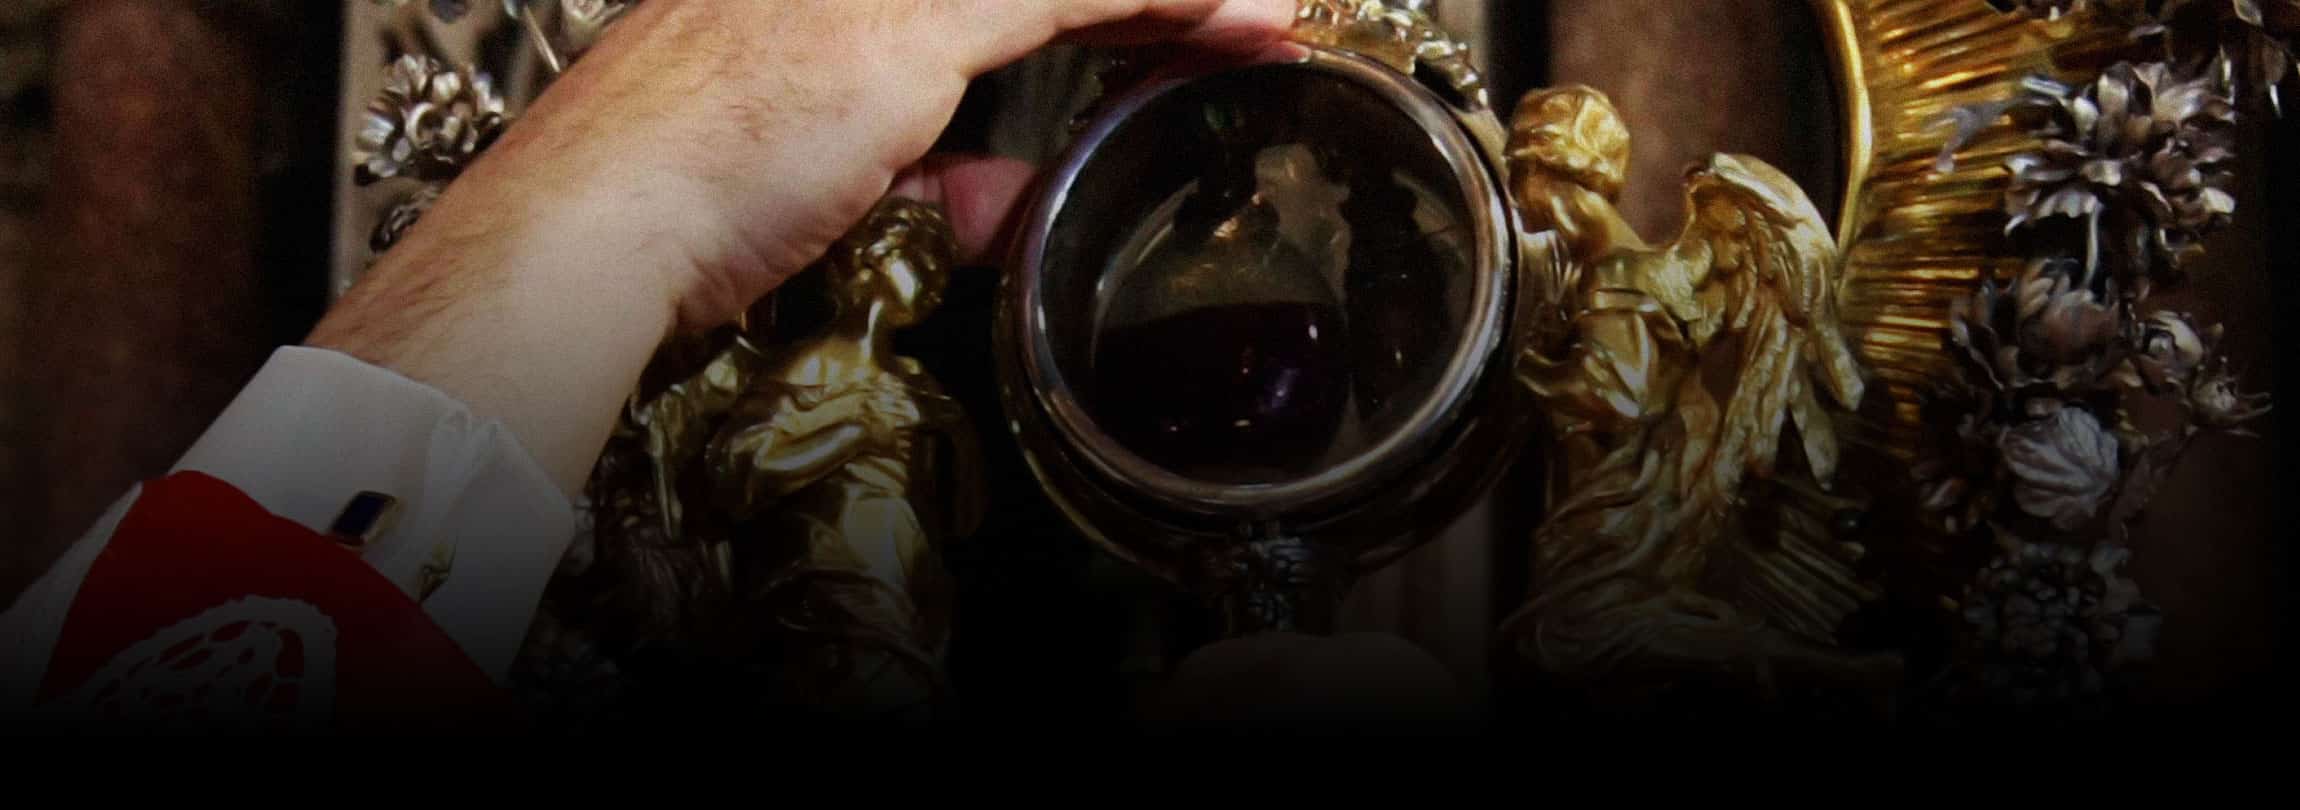 Por que o milagre de São Januário é tão importante?